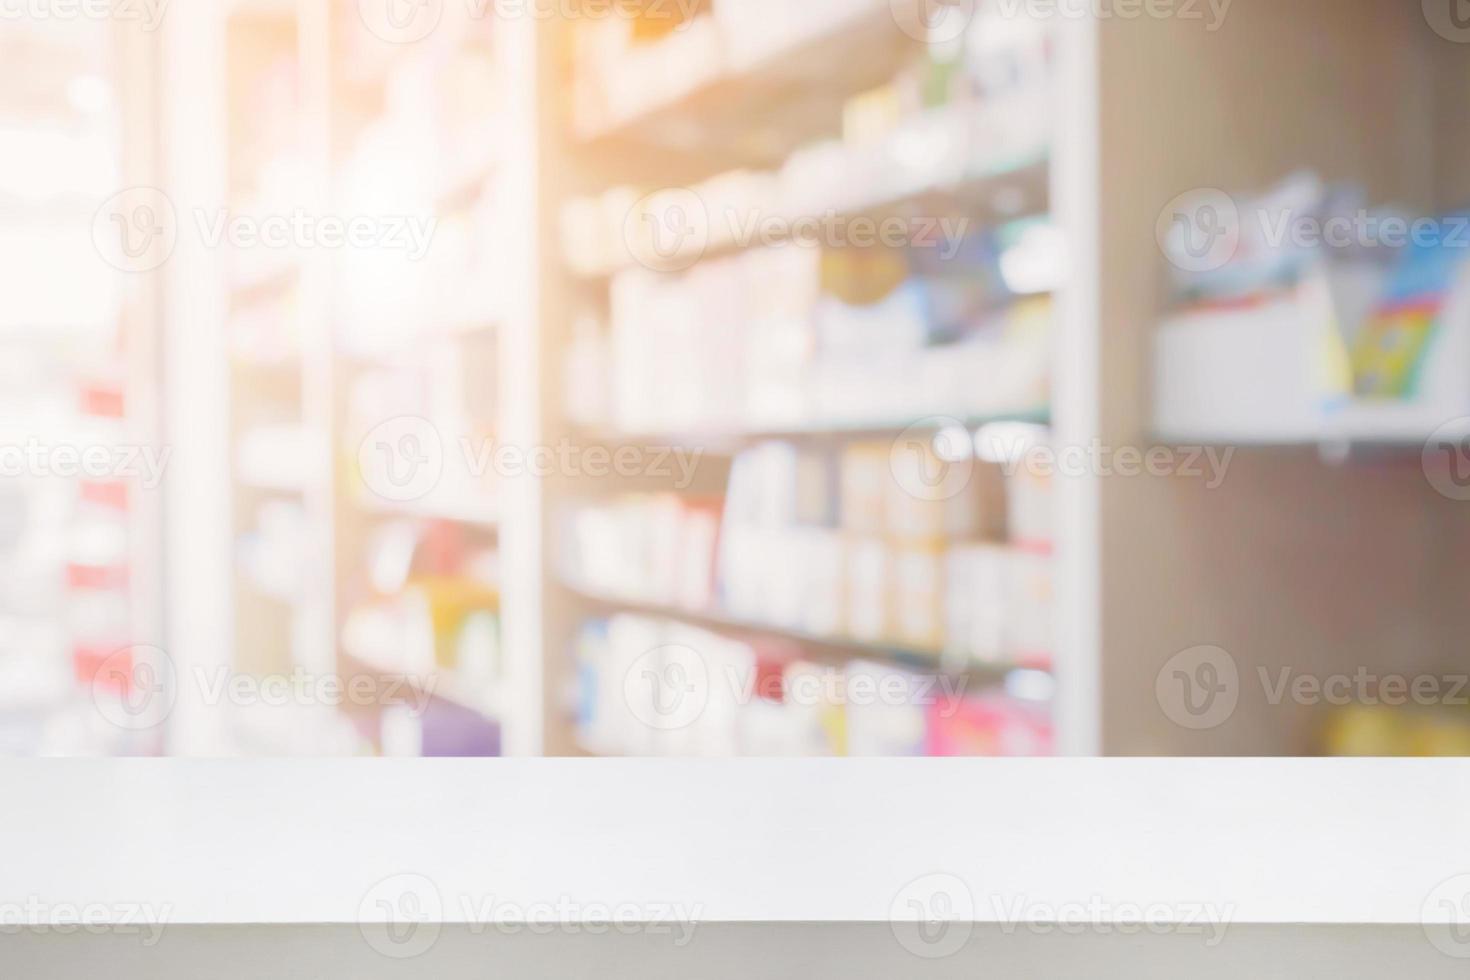 witte tafel teller in apotheek winkel interieur met medicijnen op medische planken achtergrond wazig foto